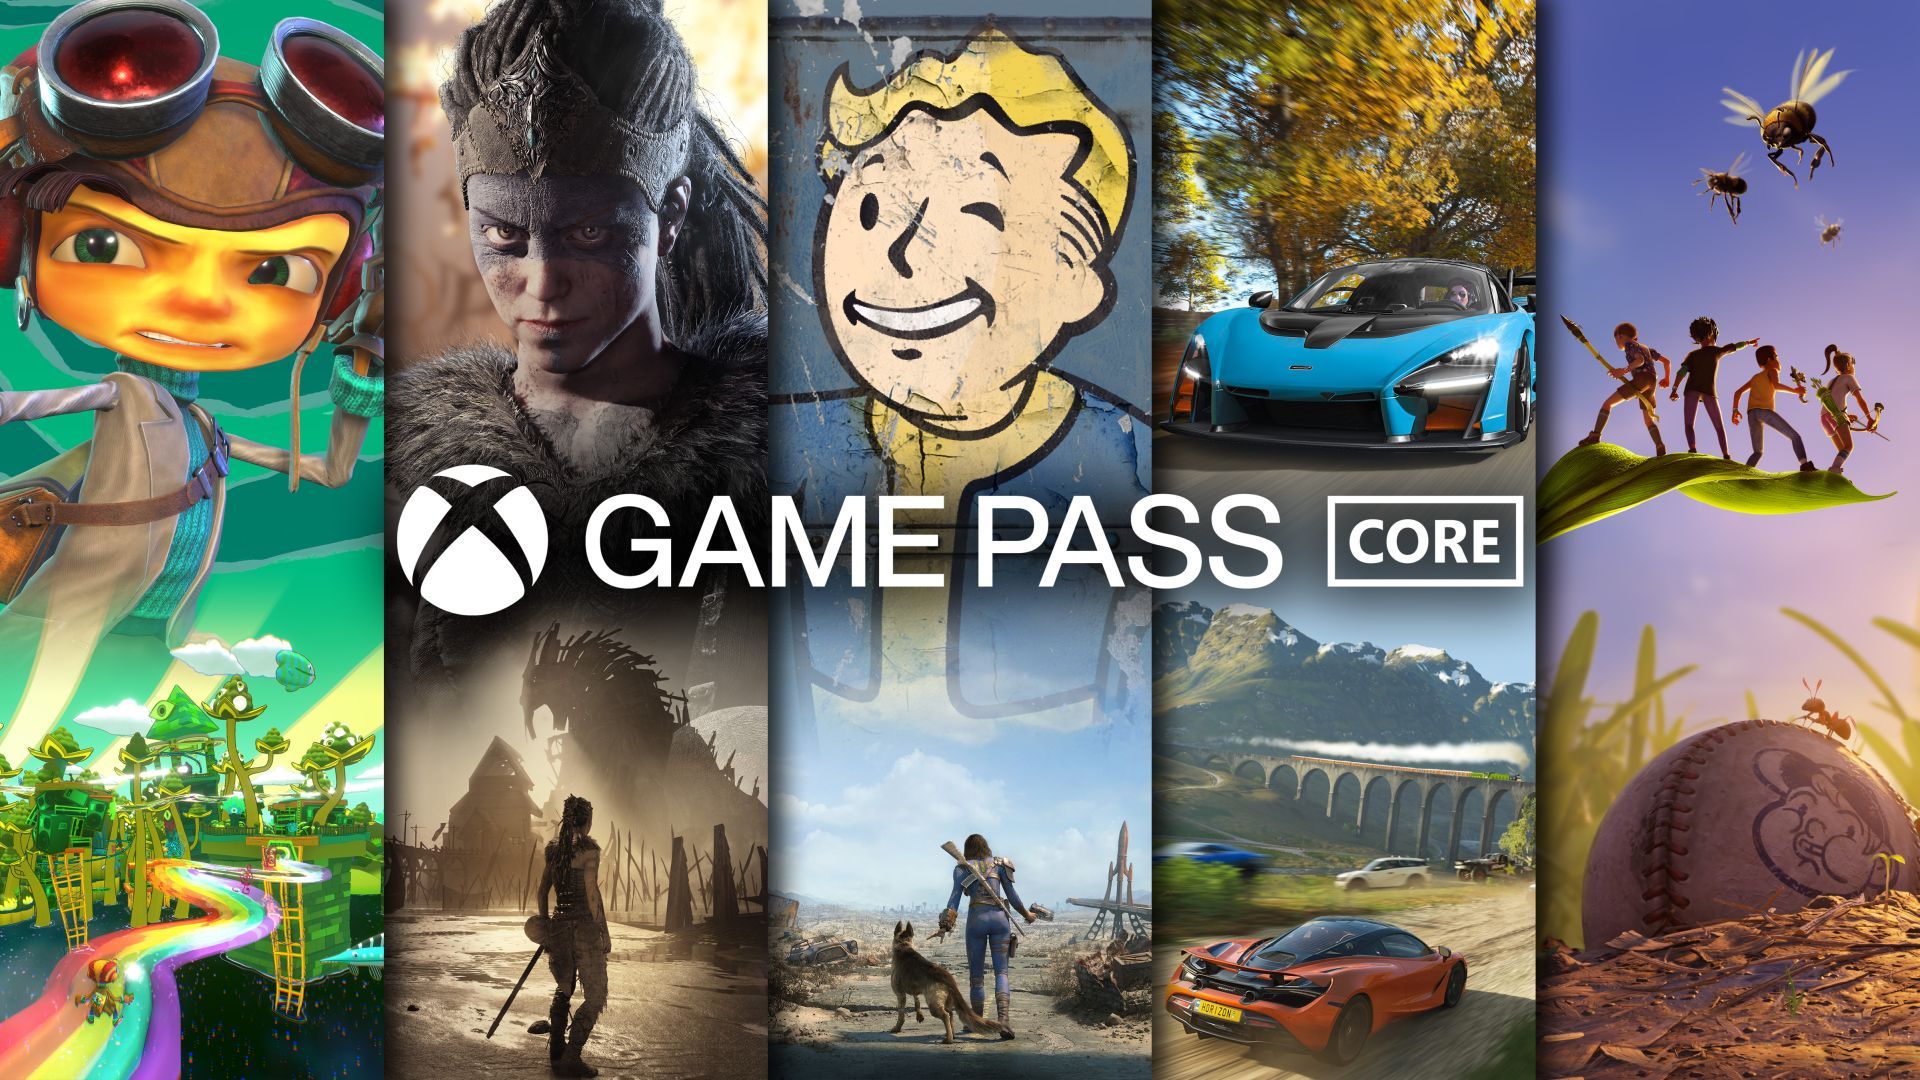 Xbox Game Pass: Novos jogos são anunciados para fevereiro